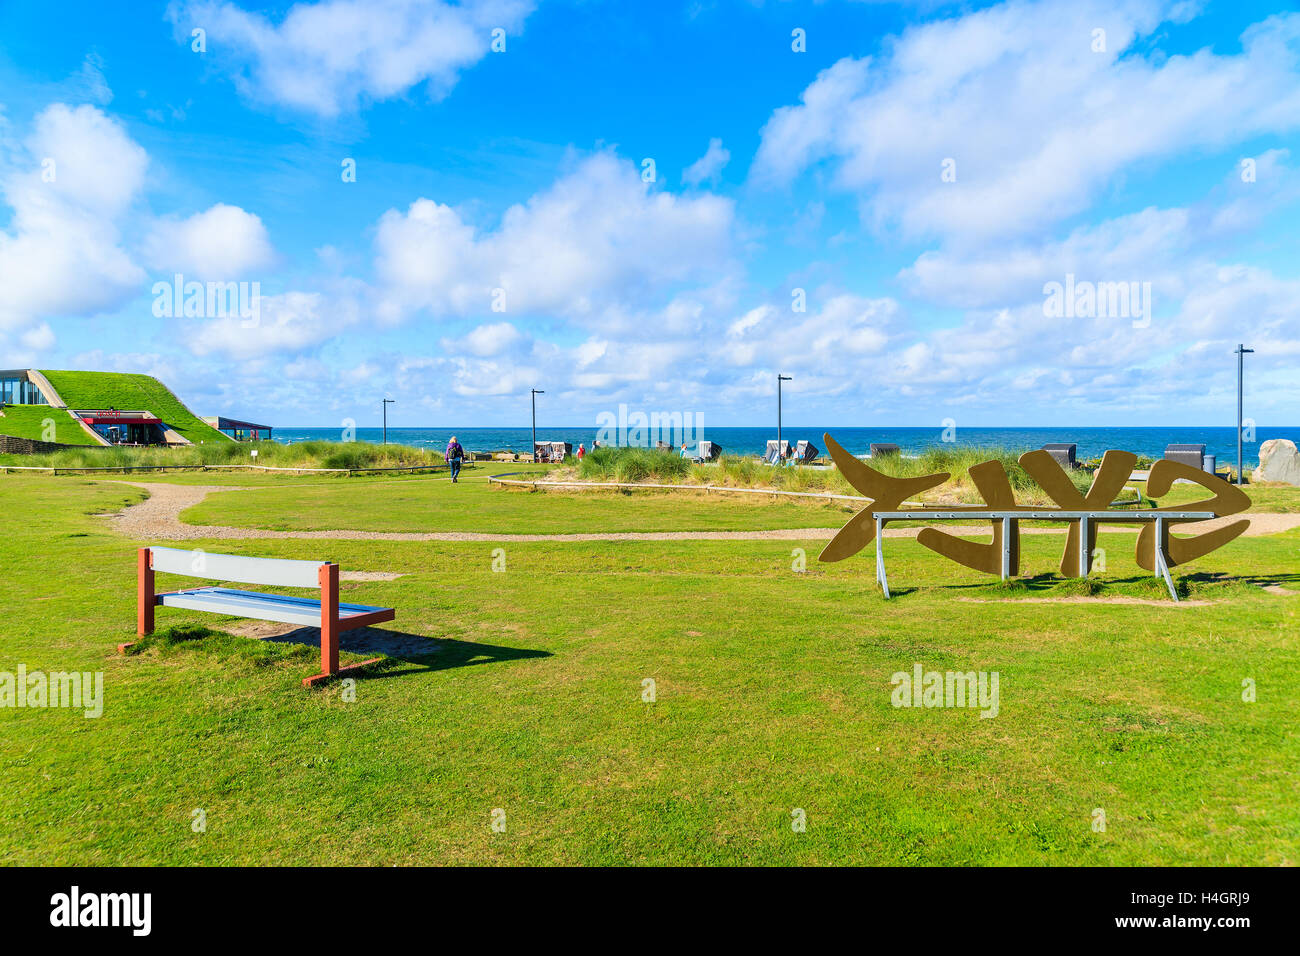 WENNINGSTEDT Stadt, Insel SYLT - SEP 11, 2016: grüner Park mit "Sylt" Schild an Strandpromenade auf der Insel Sylt, Deutschland. Stockfoto